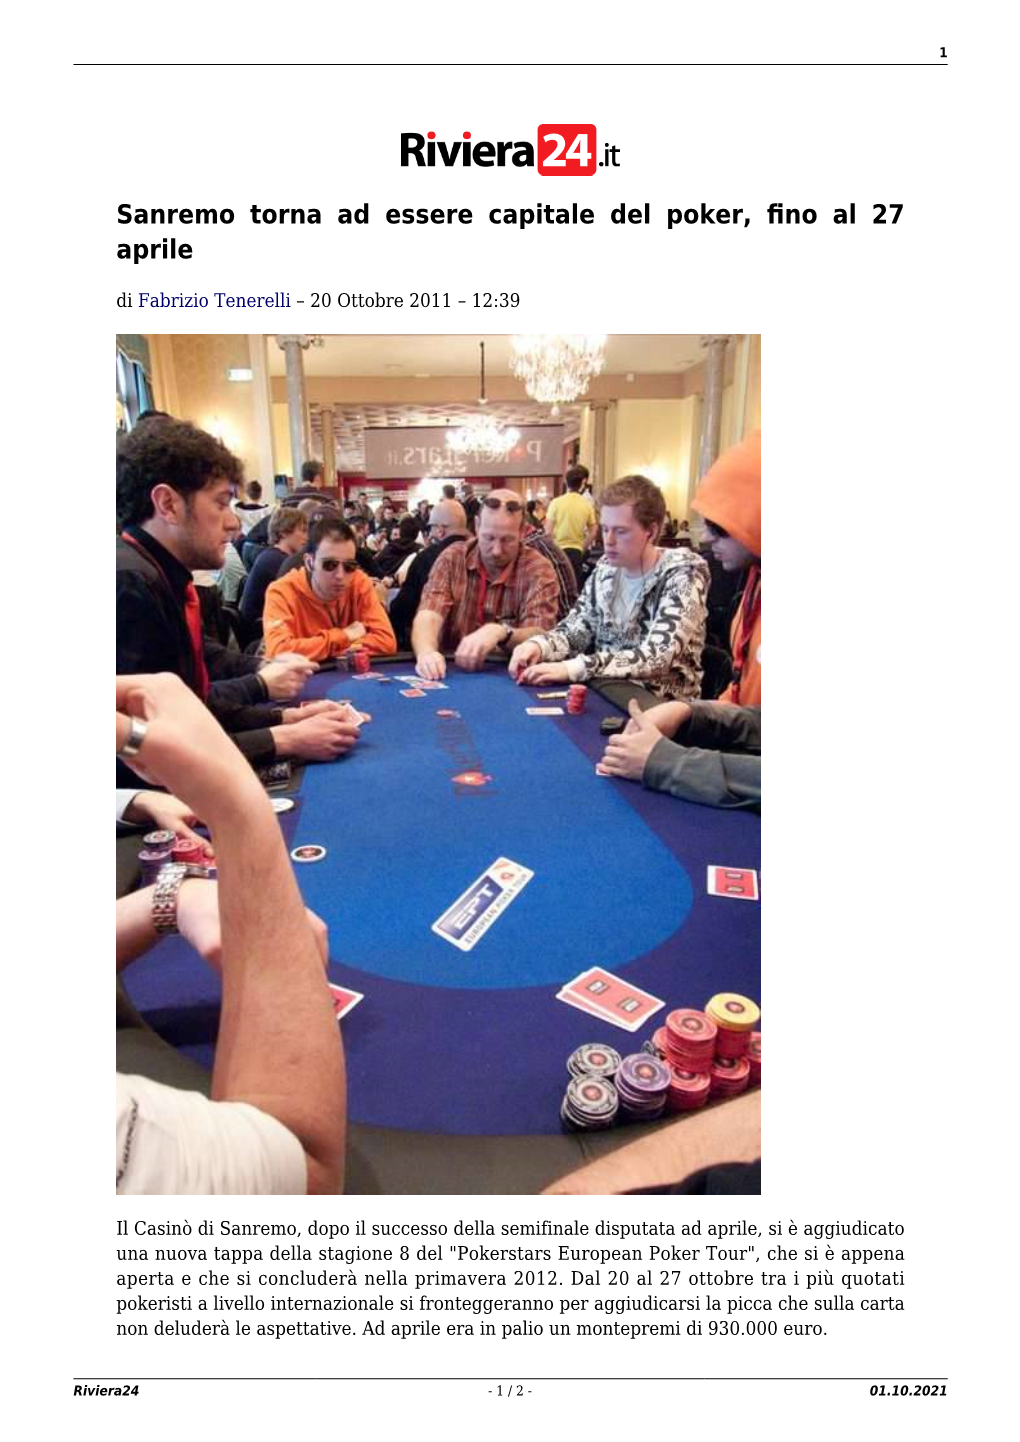 Sanremo Torna Ad Essere Capitale Del Poker, Fino Al 27